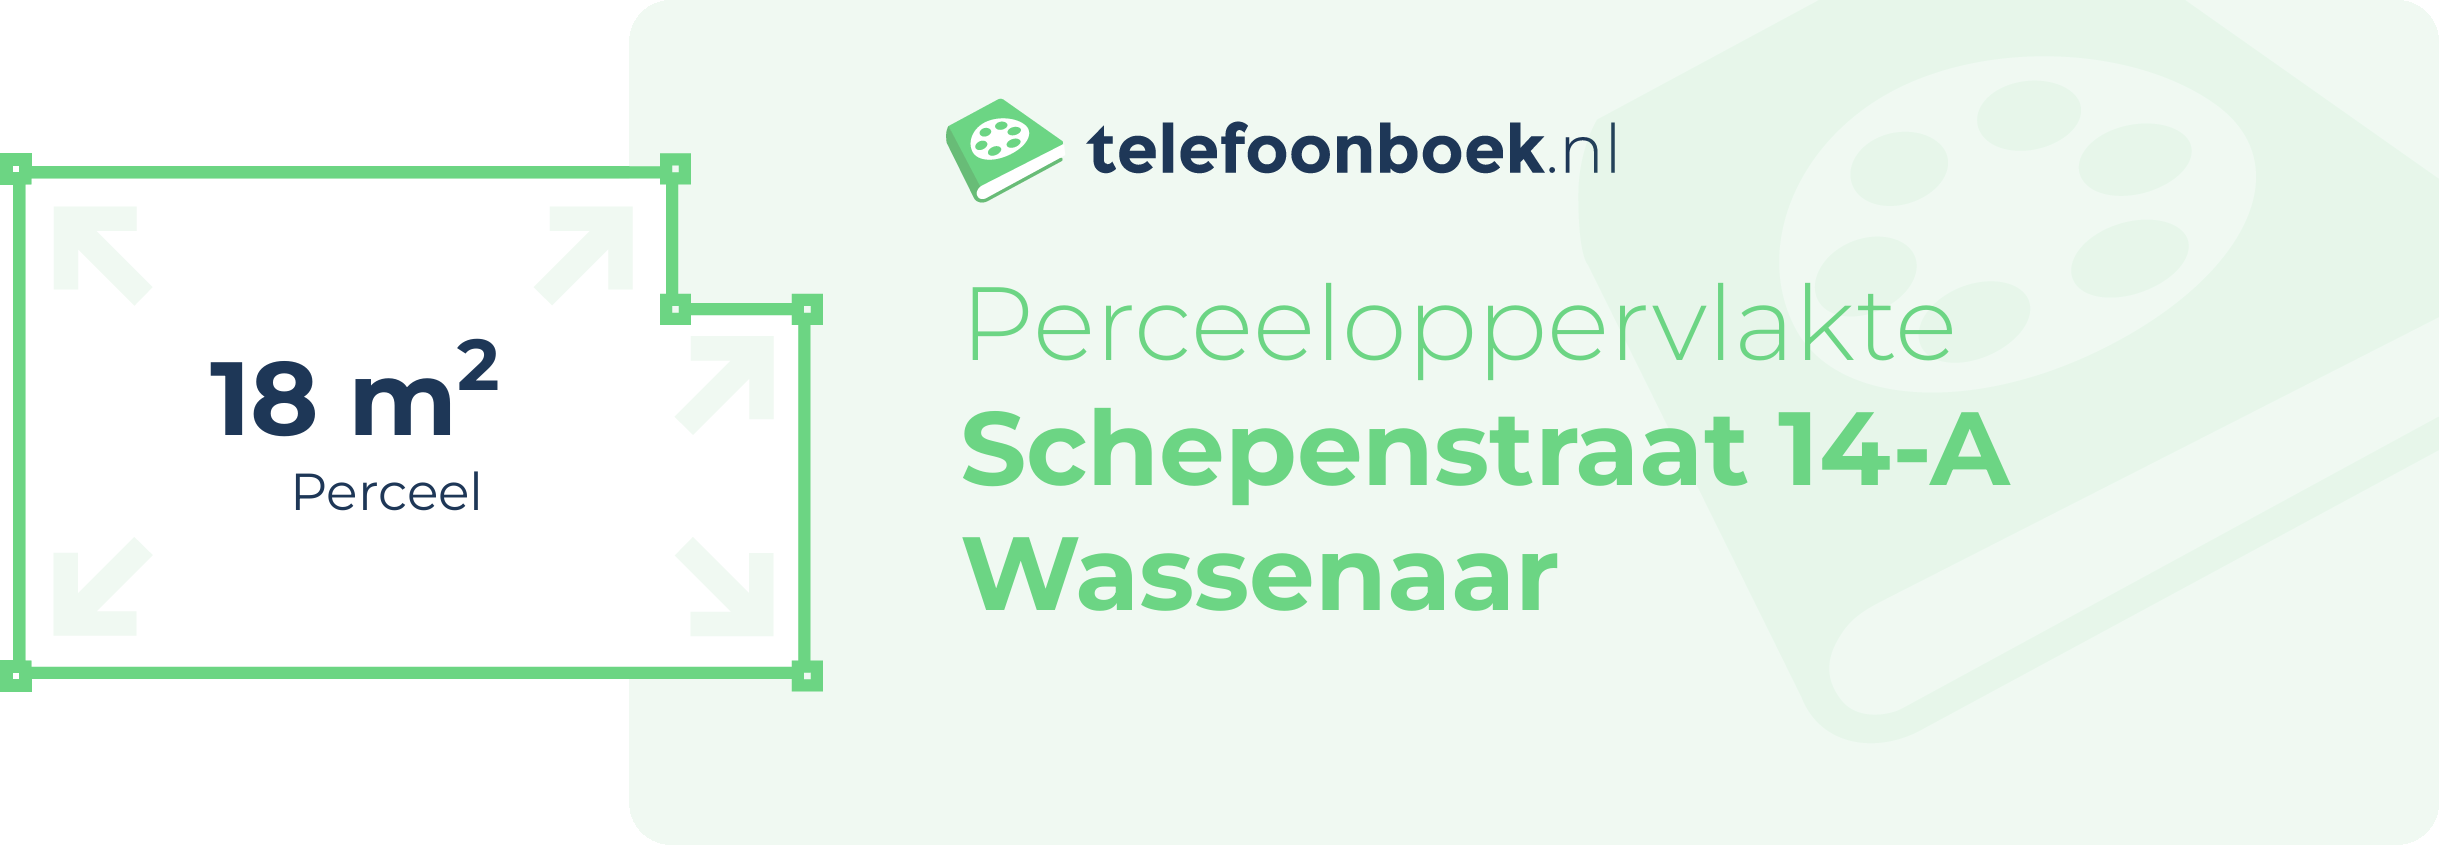 Perceeloppervlakte Schepenstraat 14-A Wassenaar